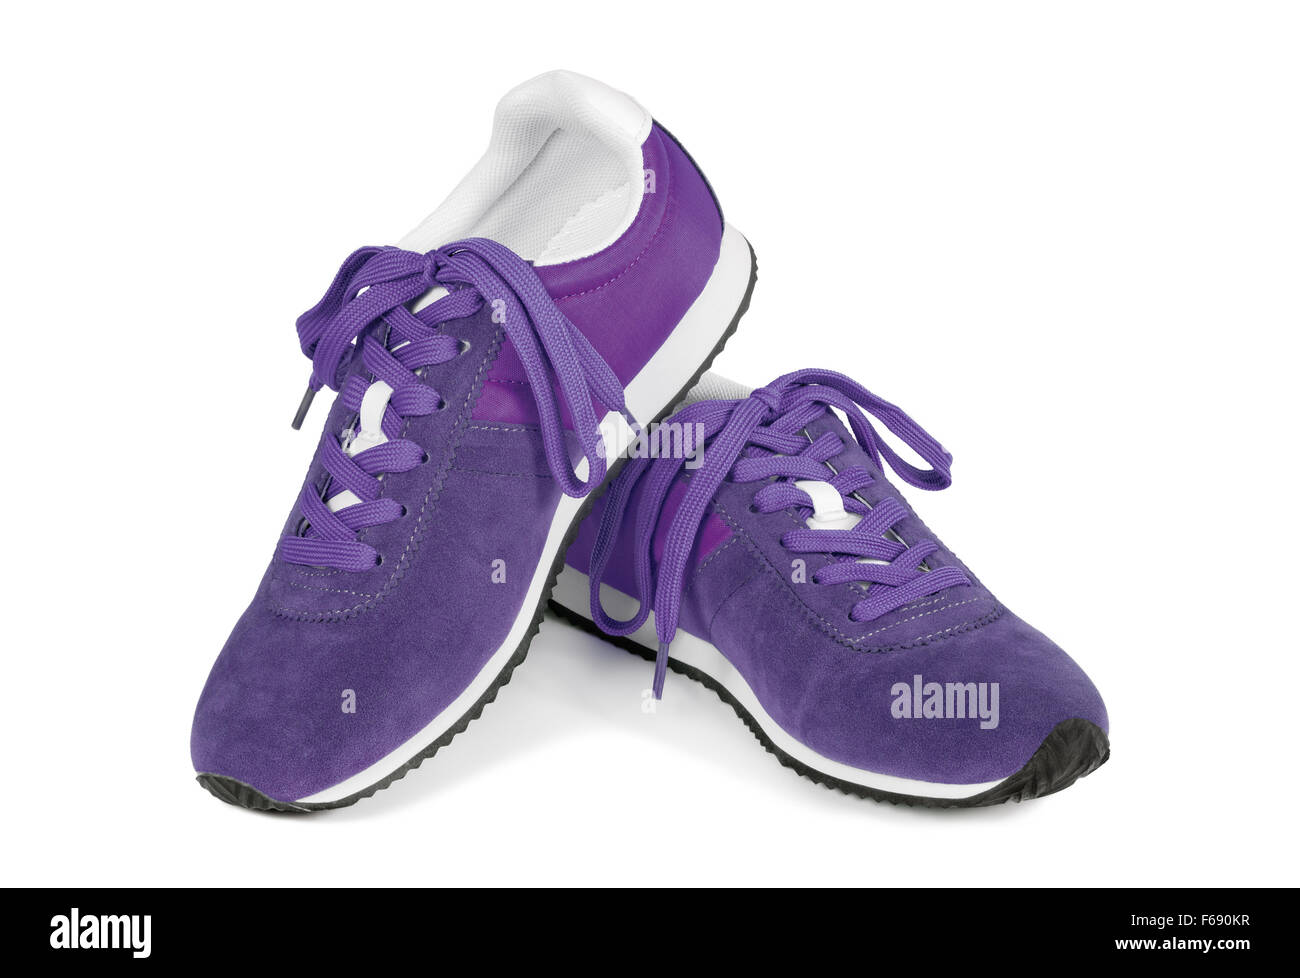 Chaussures violet isolé sur fond blanc. Style Casual chaussures de sport. Banque D'Images